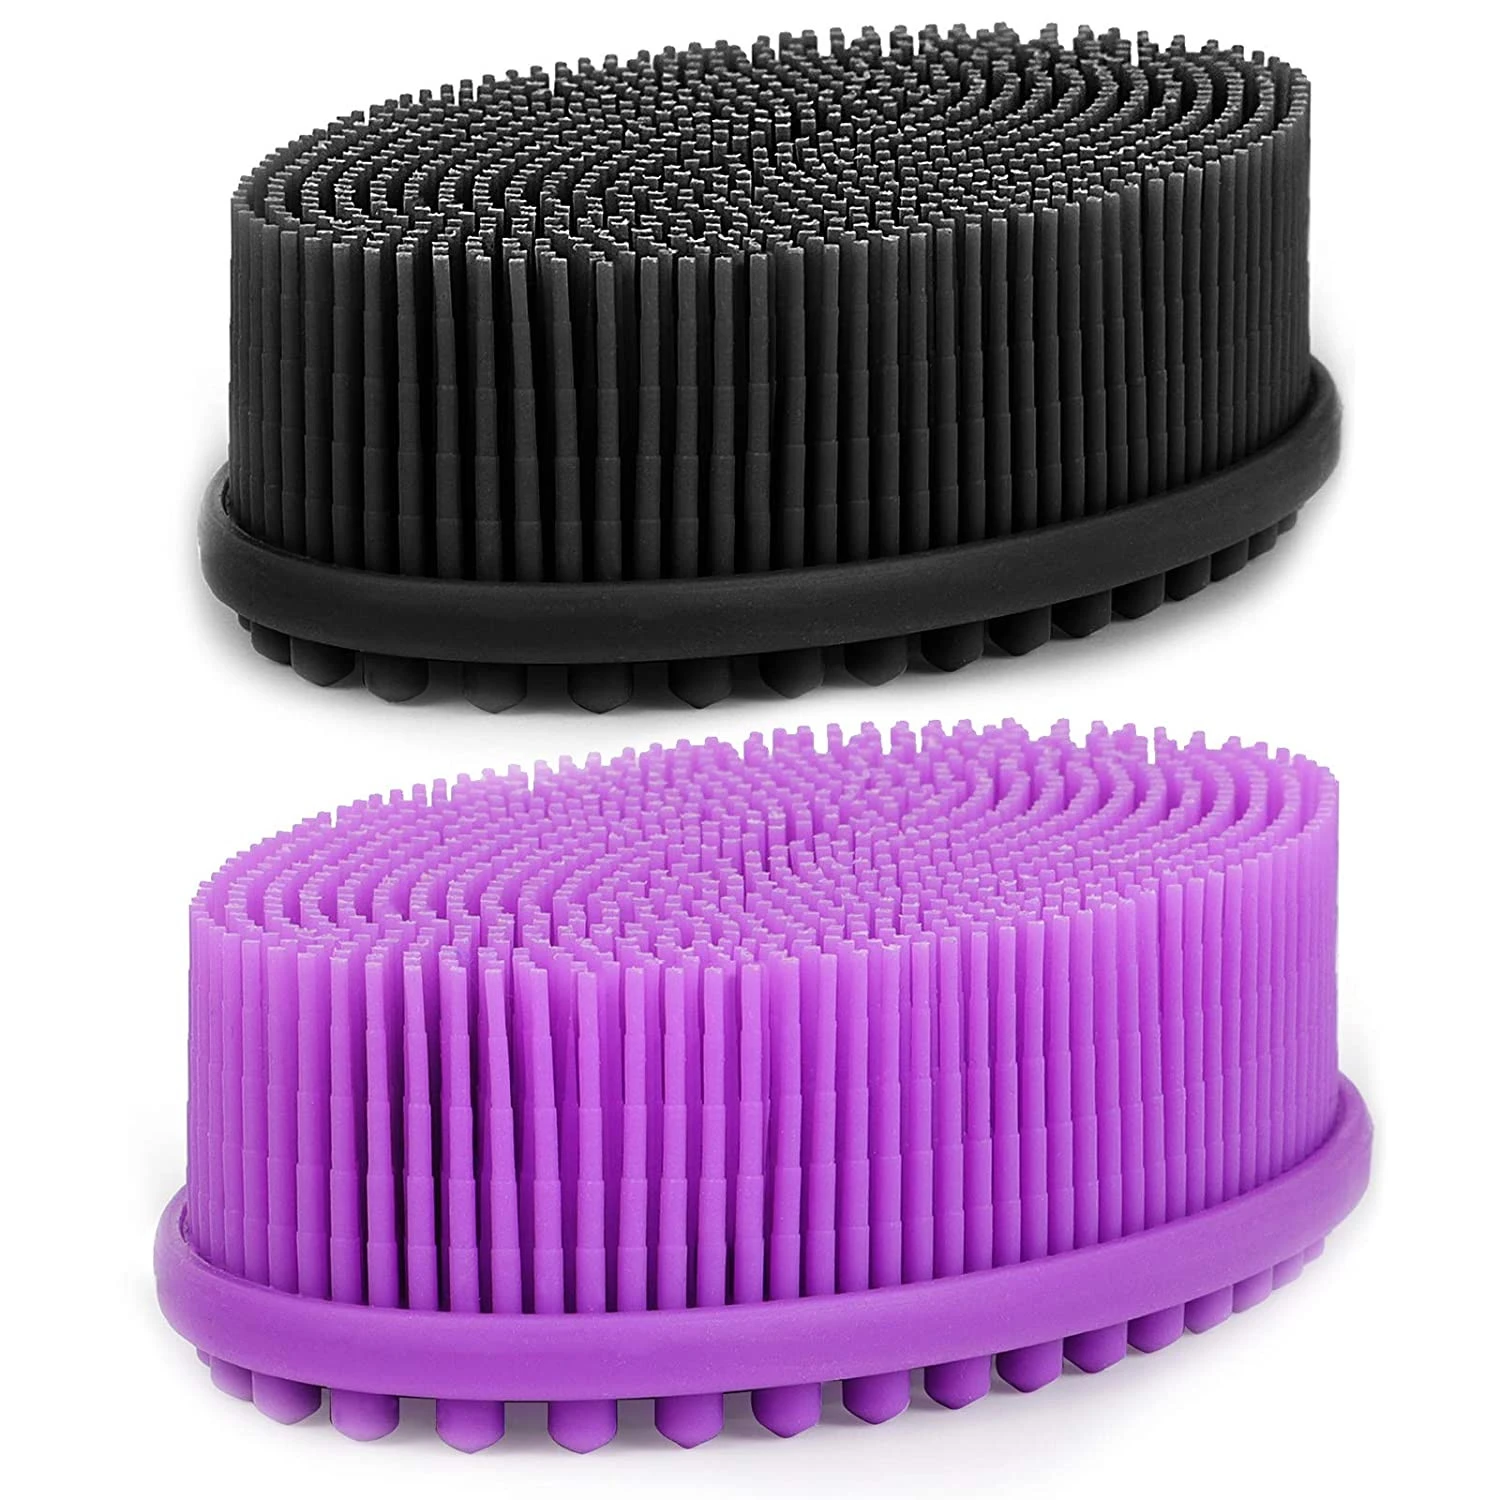 2020 Custom bath brushes sponges Wholesale Soft Exfoliating Long Silicone Back Bath Body Brush